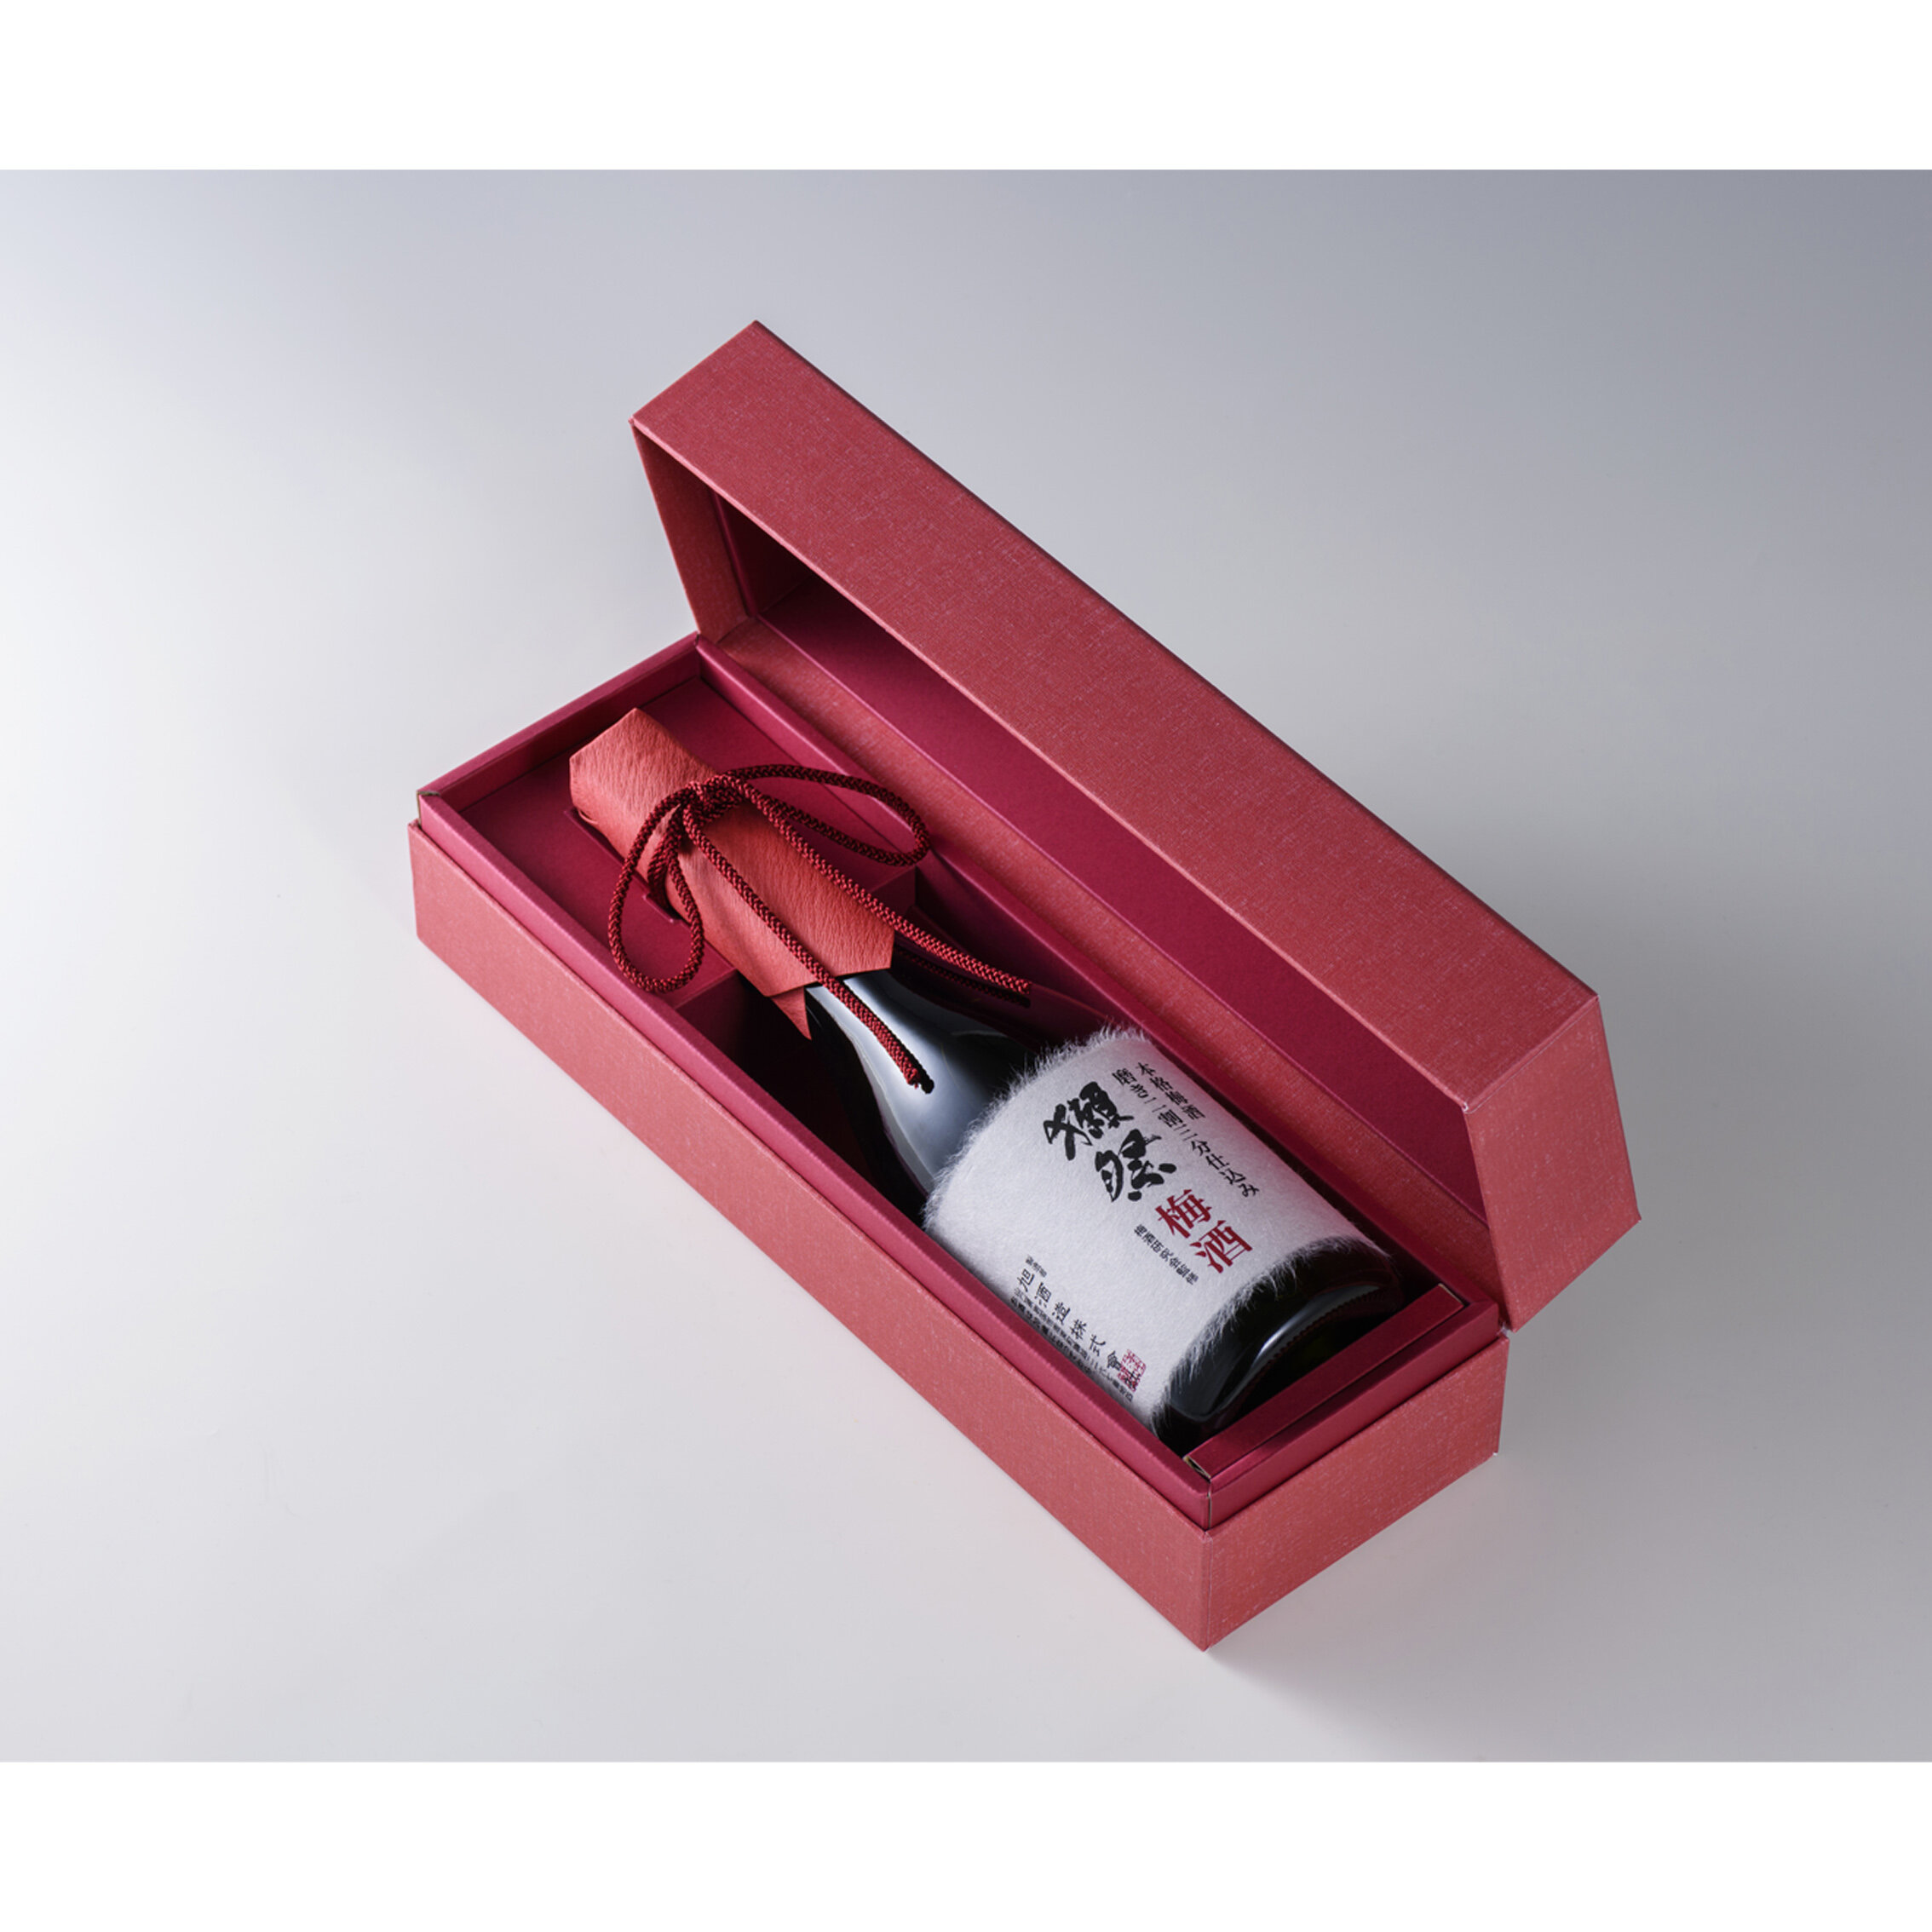 発売モデル 獺祭 梅酒 磨き二割三分仕込み 720ml 2023.01製造 tdh